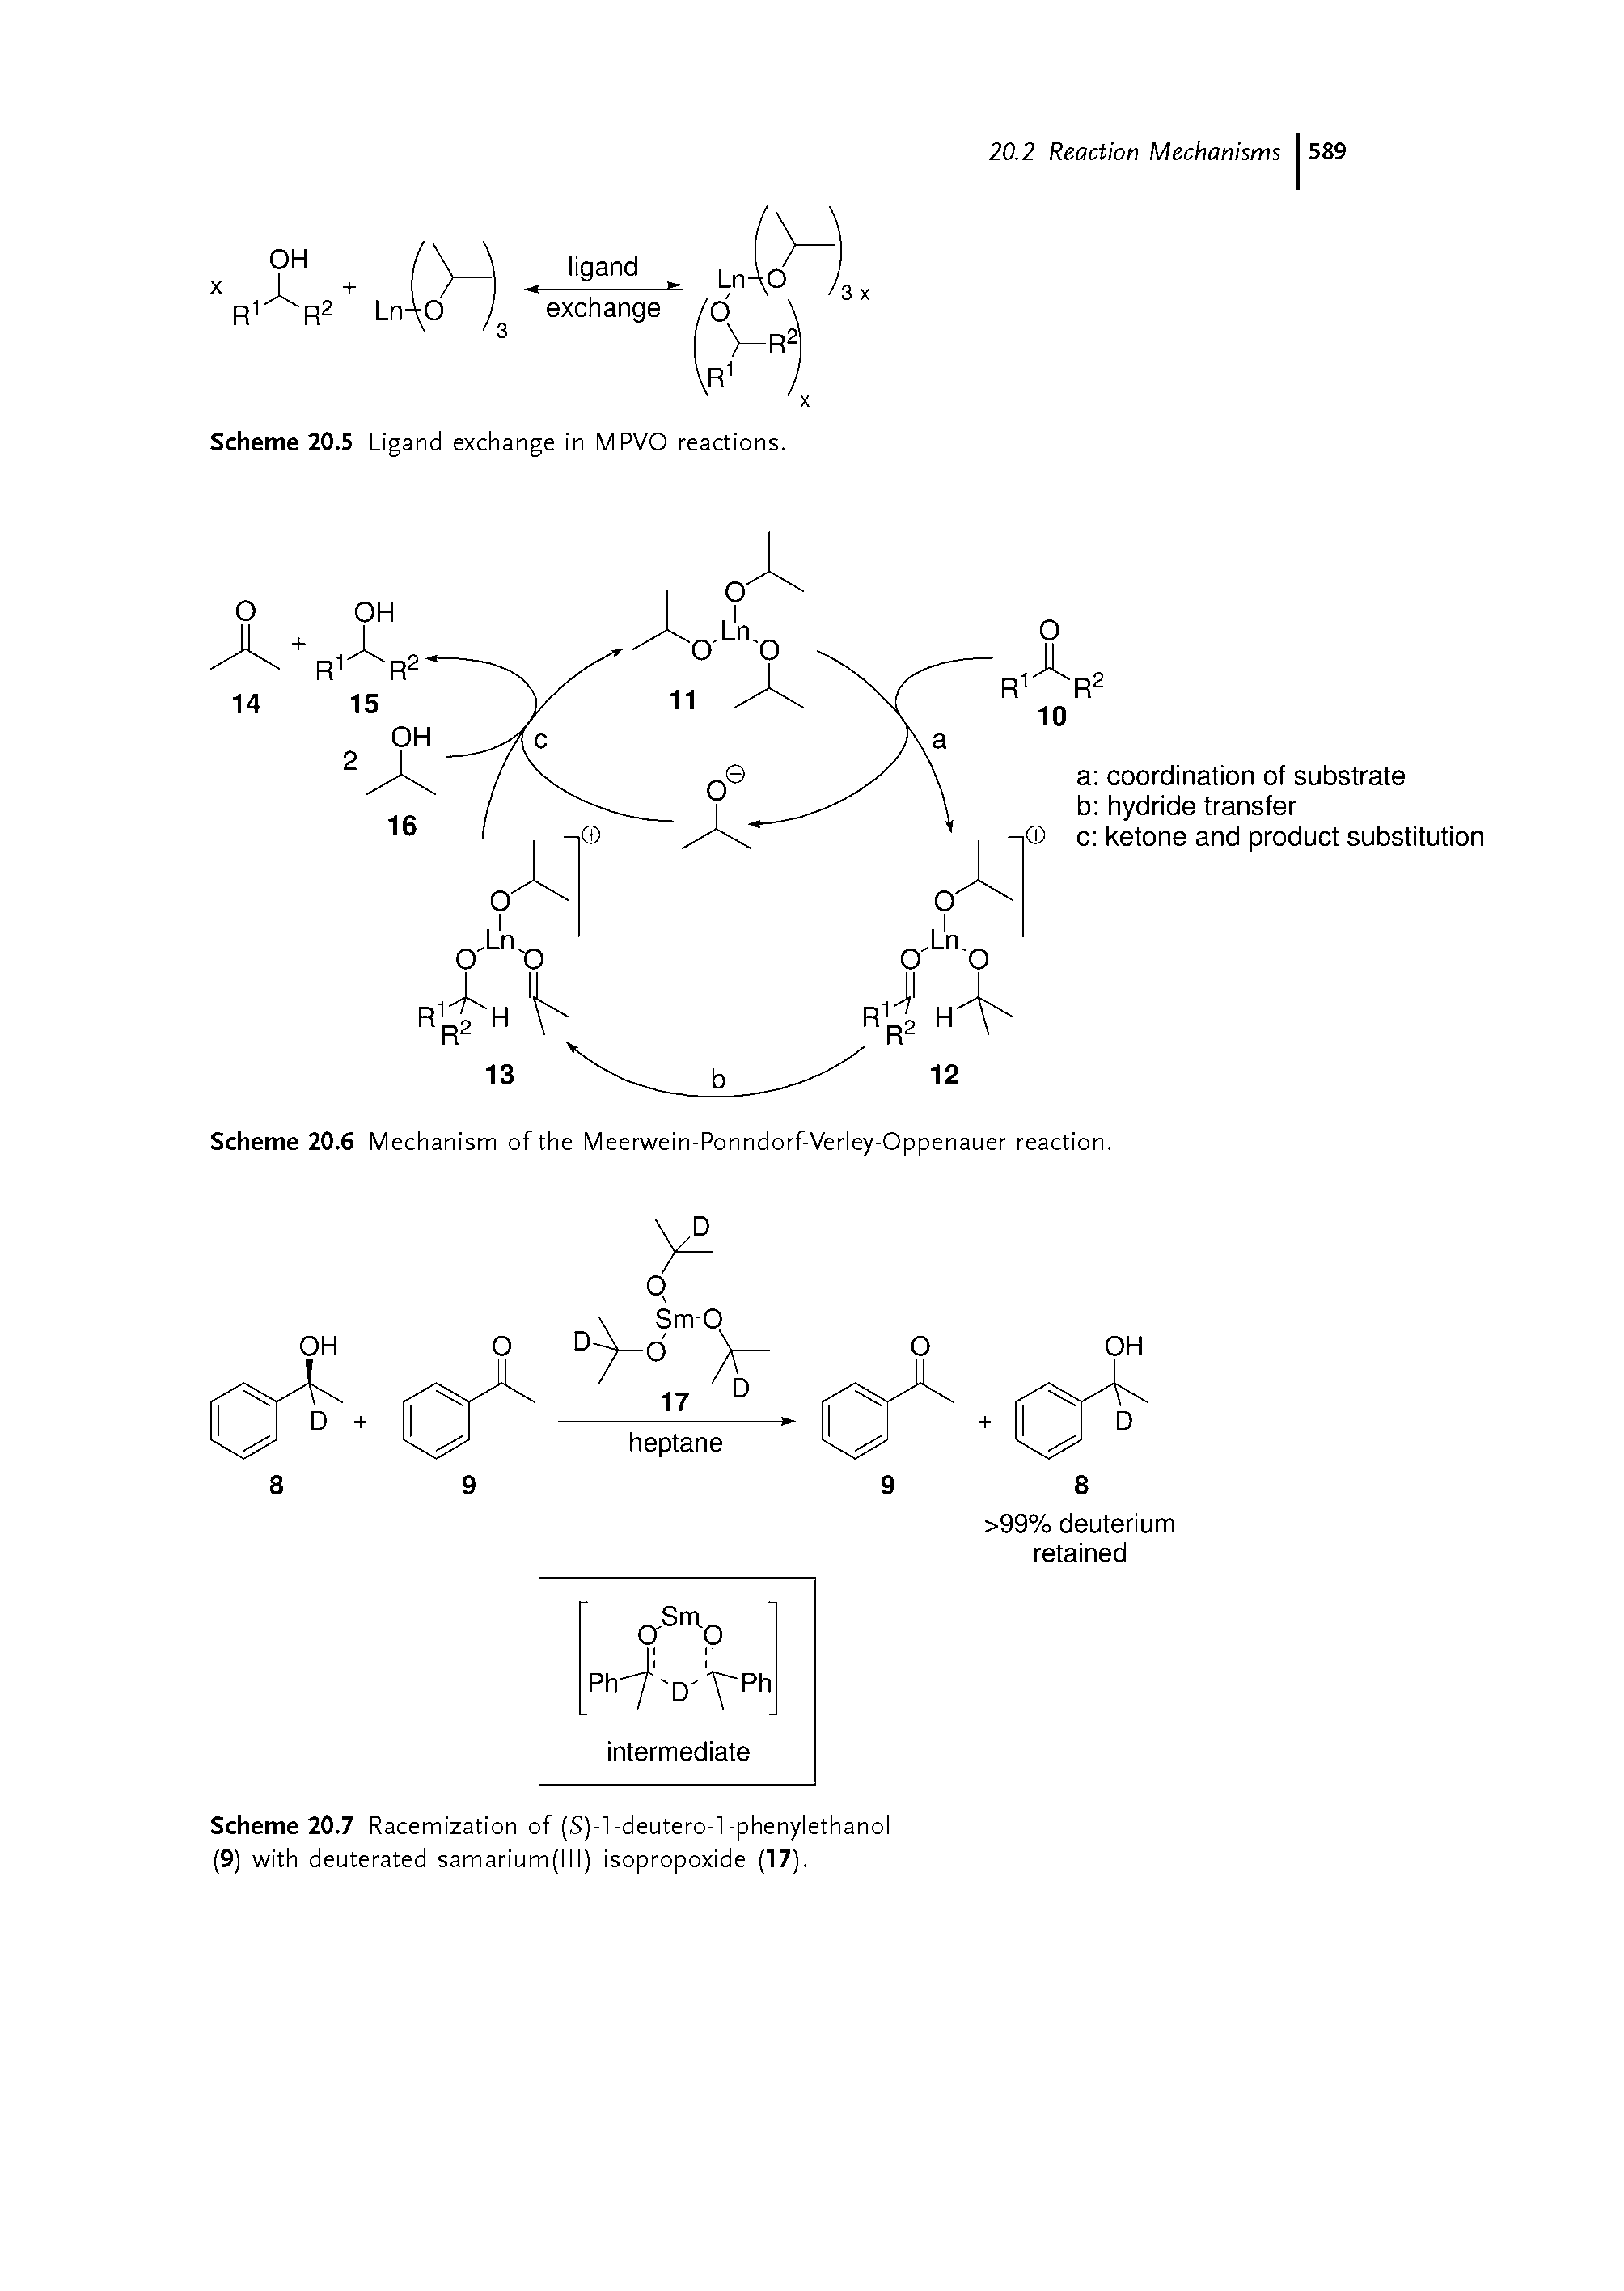 Scheme 20.6 Mechanism of the Meerwein-Ponndorf-Verley-Oppenauer reaction.